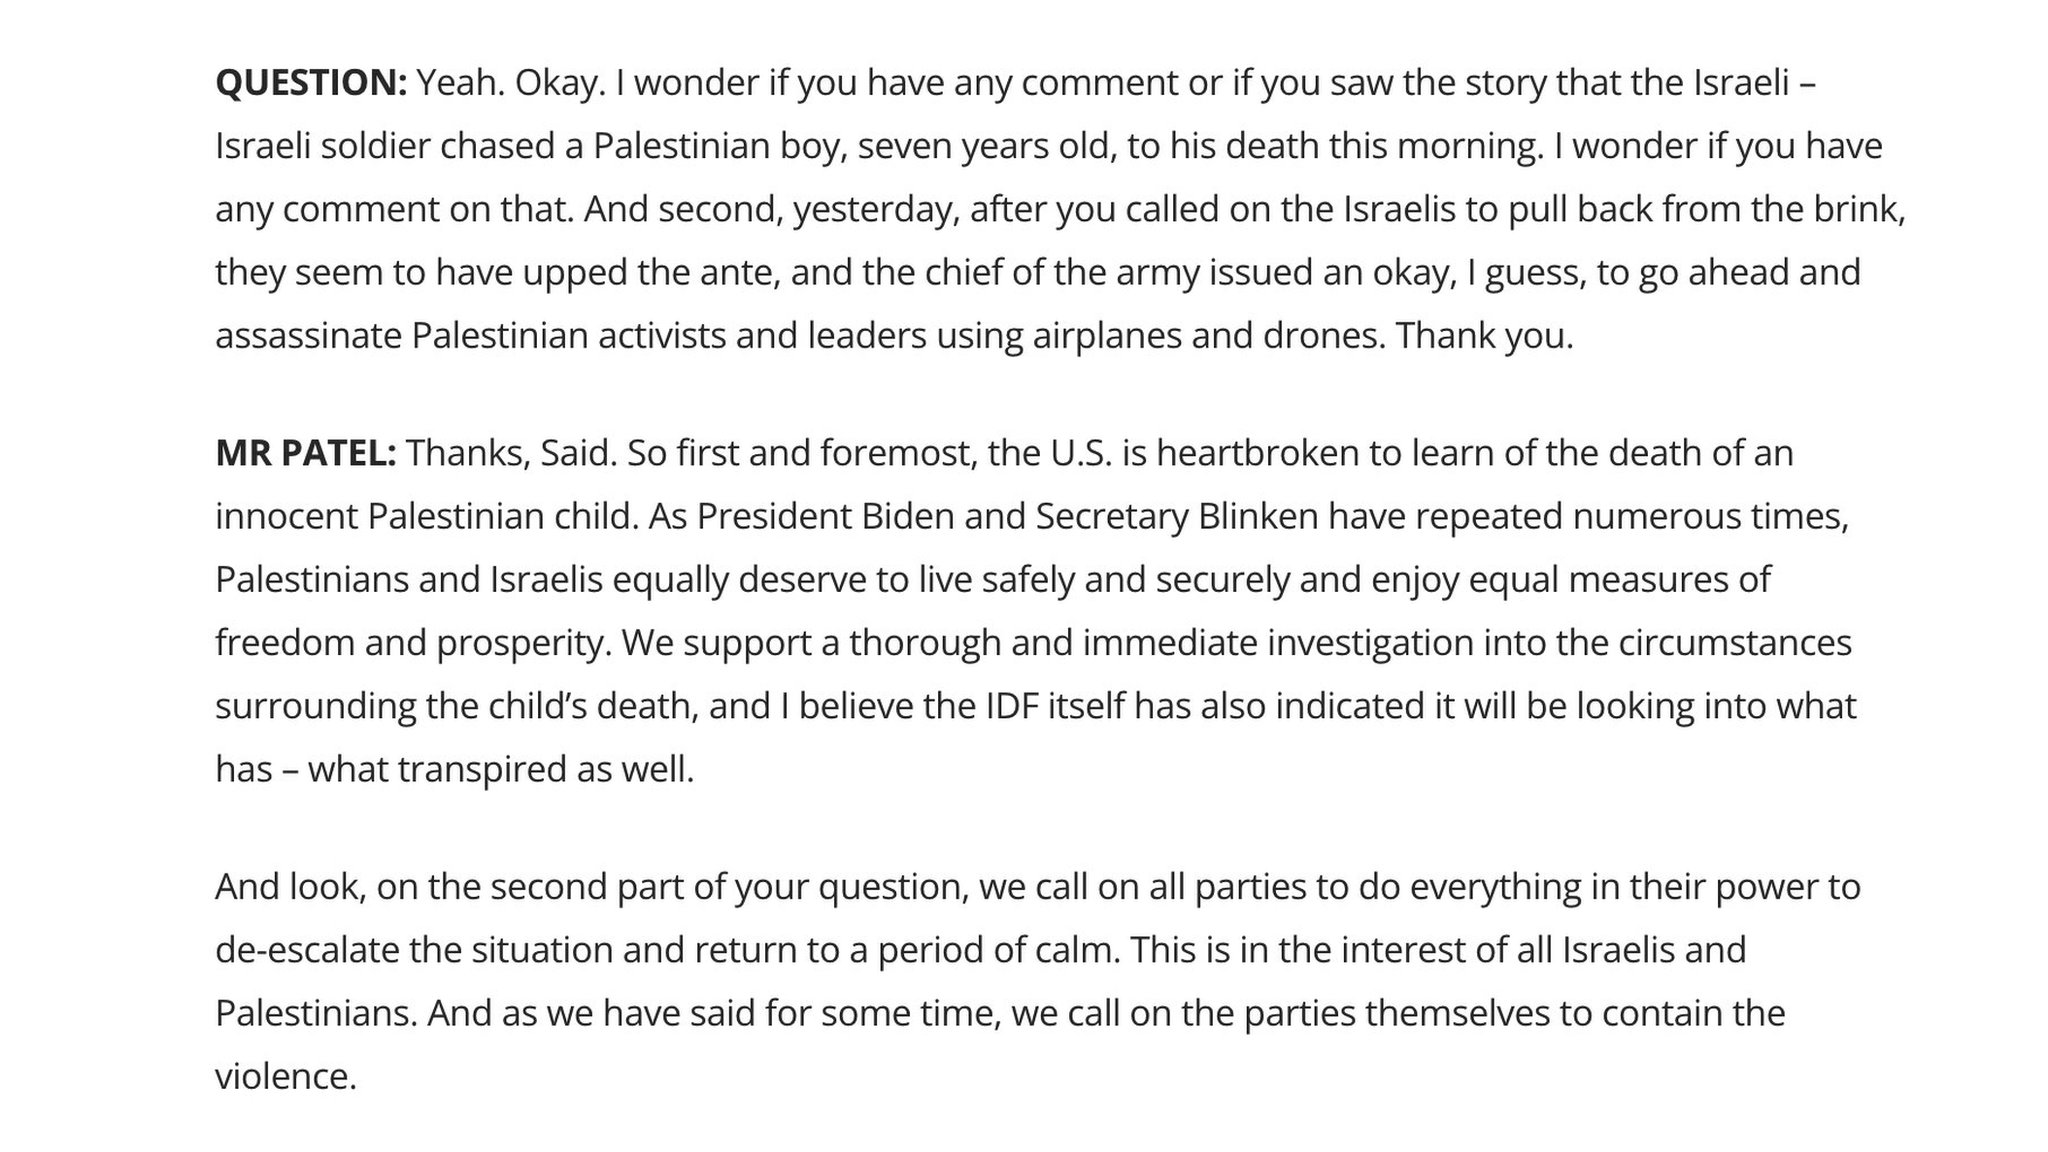 تصريح نائب المتحدث باسم الخارجية الأميركية فيدانت باتيل في إجابة على سؤال حول مقتل الطفل